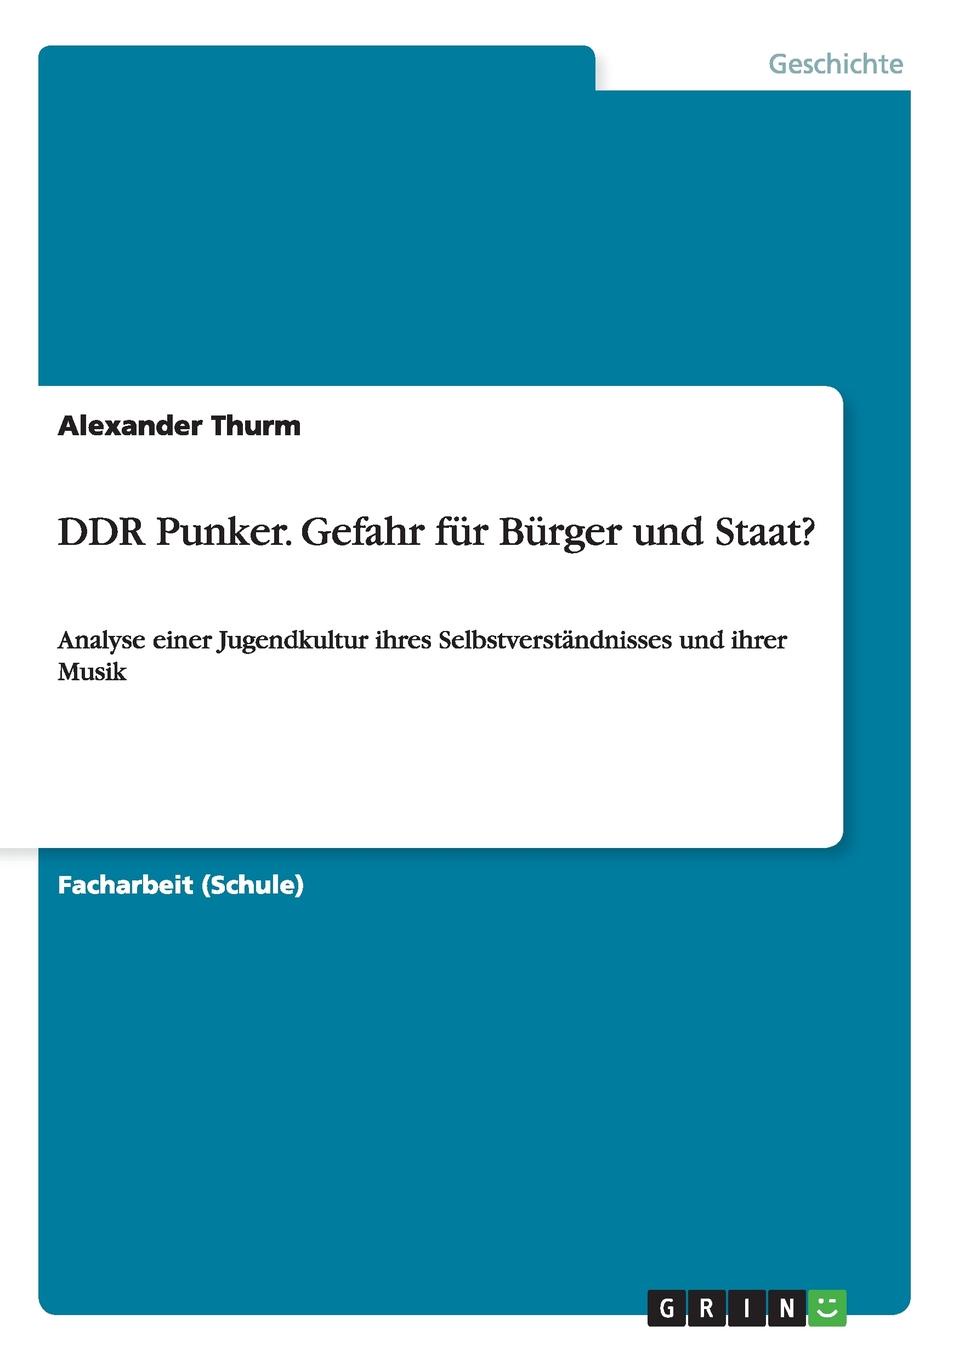 фото DDR Punker. Gefahr fur Burger und Staat.